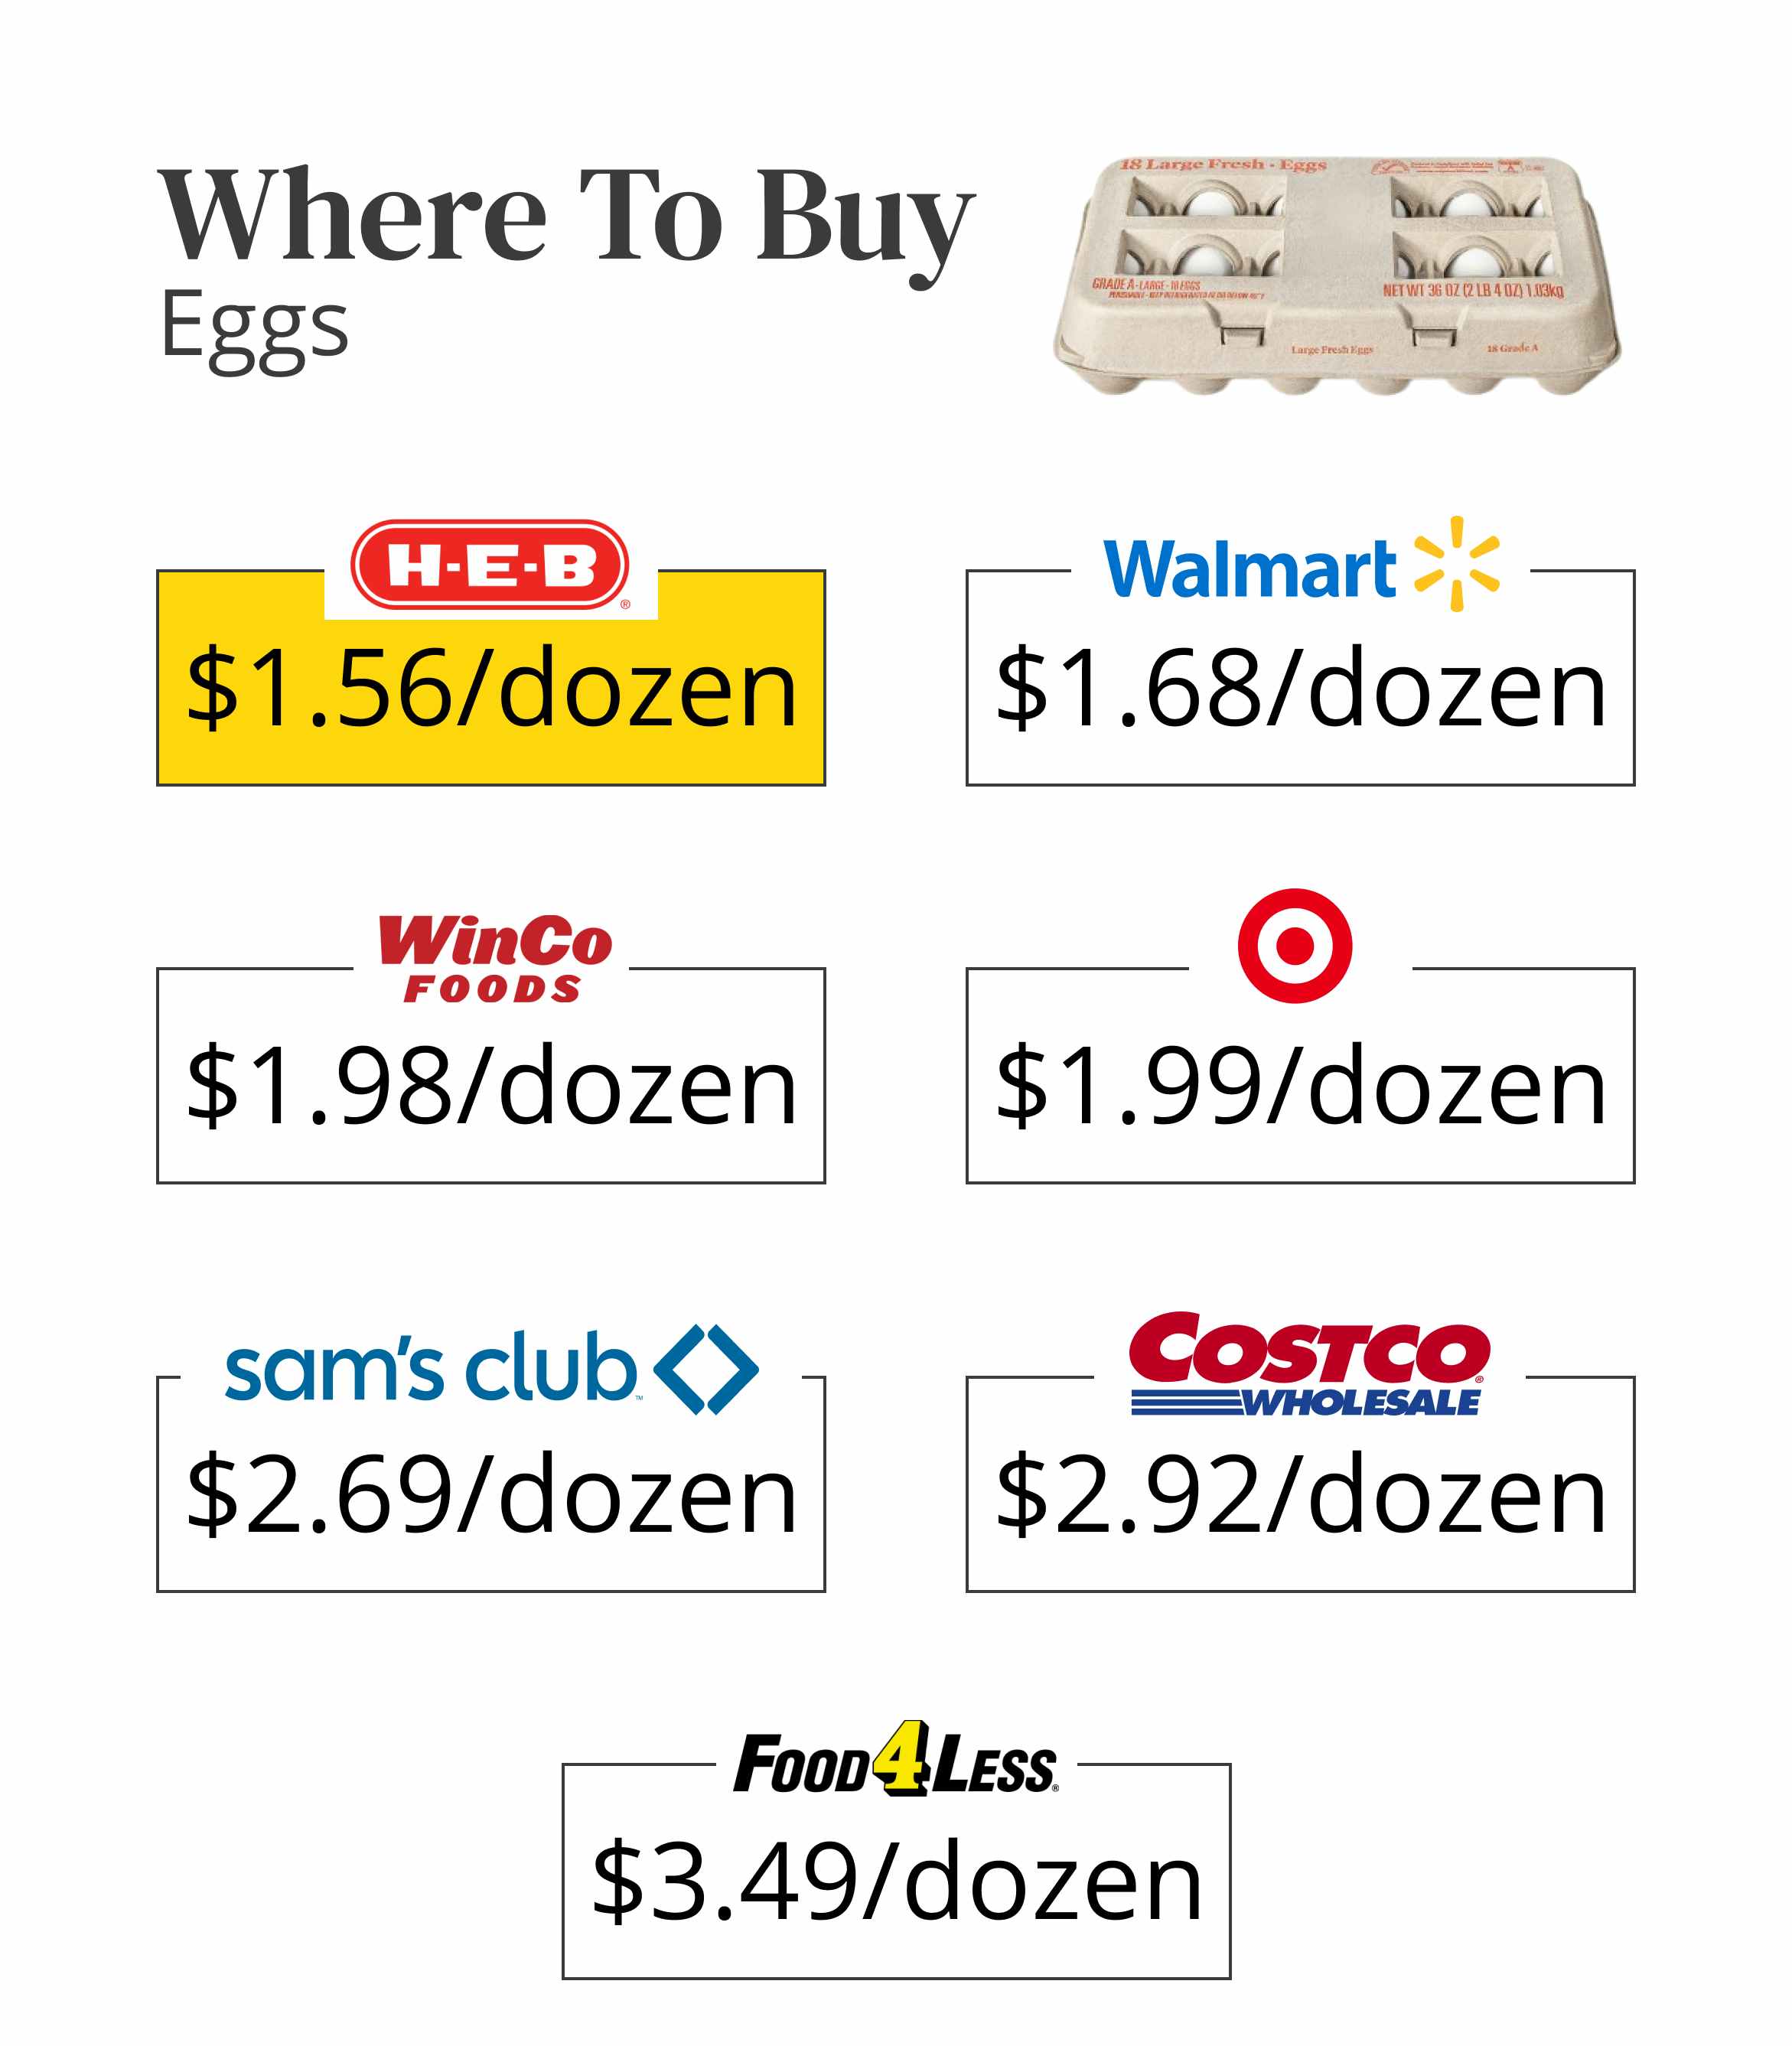 Where to buy eggs for the cheapest price per dozen.